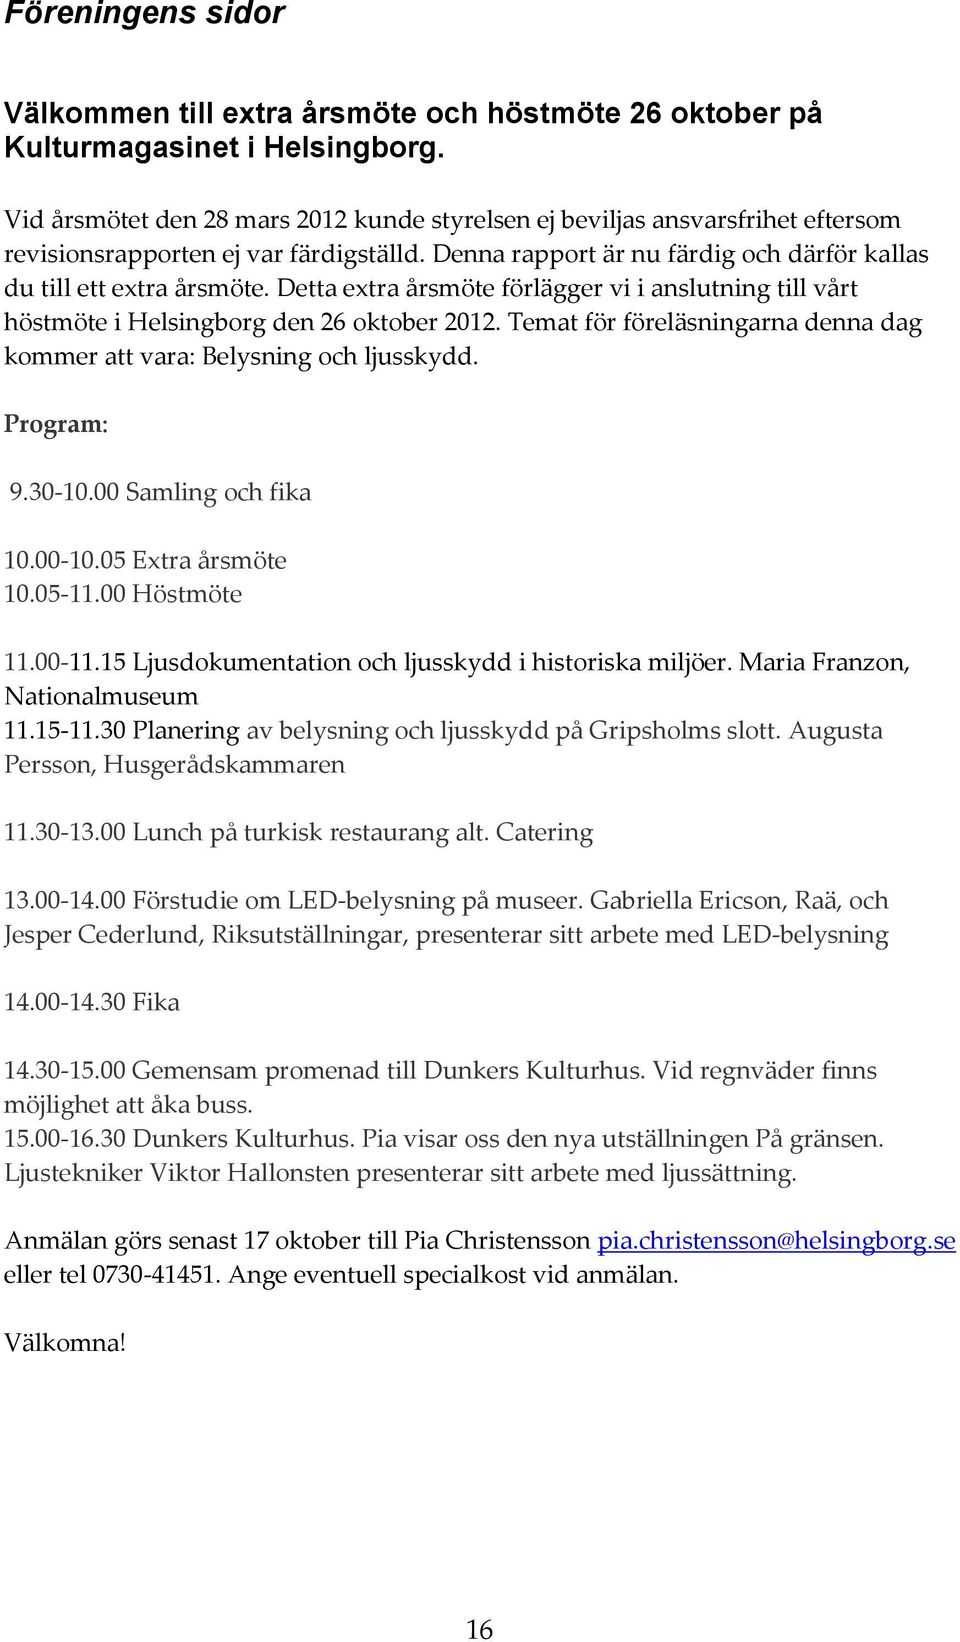 Detta extra årsmöte förlägger vi i anslutning till vårt höstmöte i Helsingborg den 26 oktober 2012. Temat för föreläsningarna denna dag kommer att vara: Belysning och ljusskydd. Program: 9.30-10.